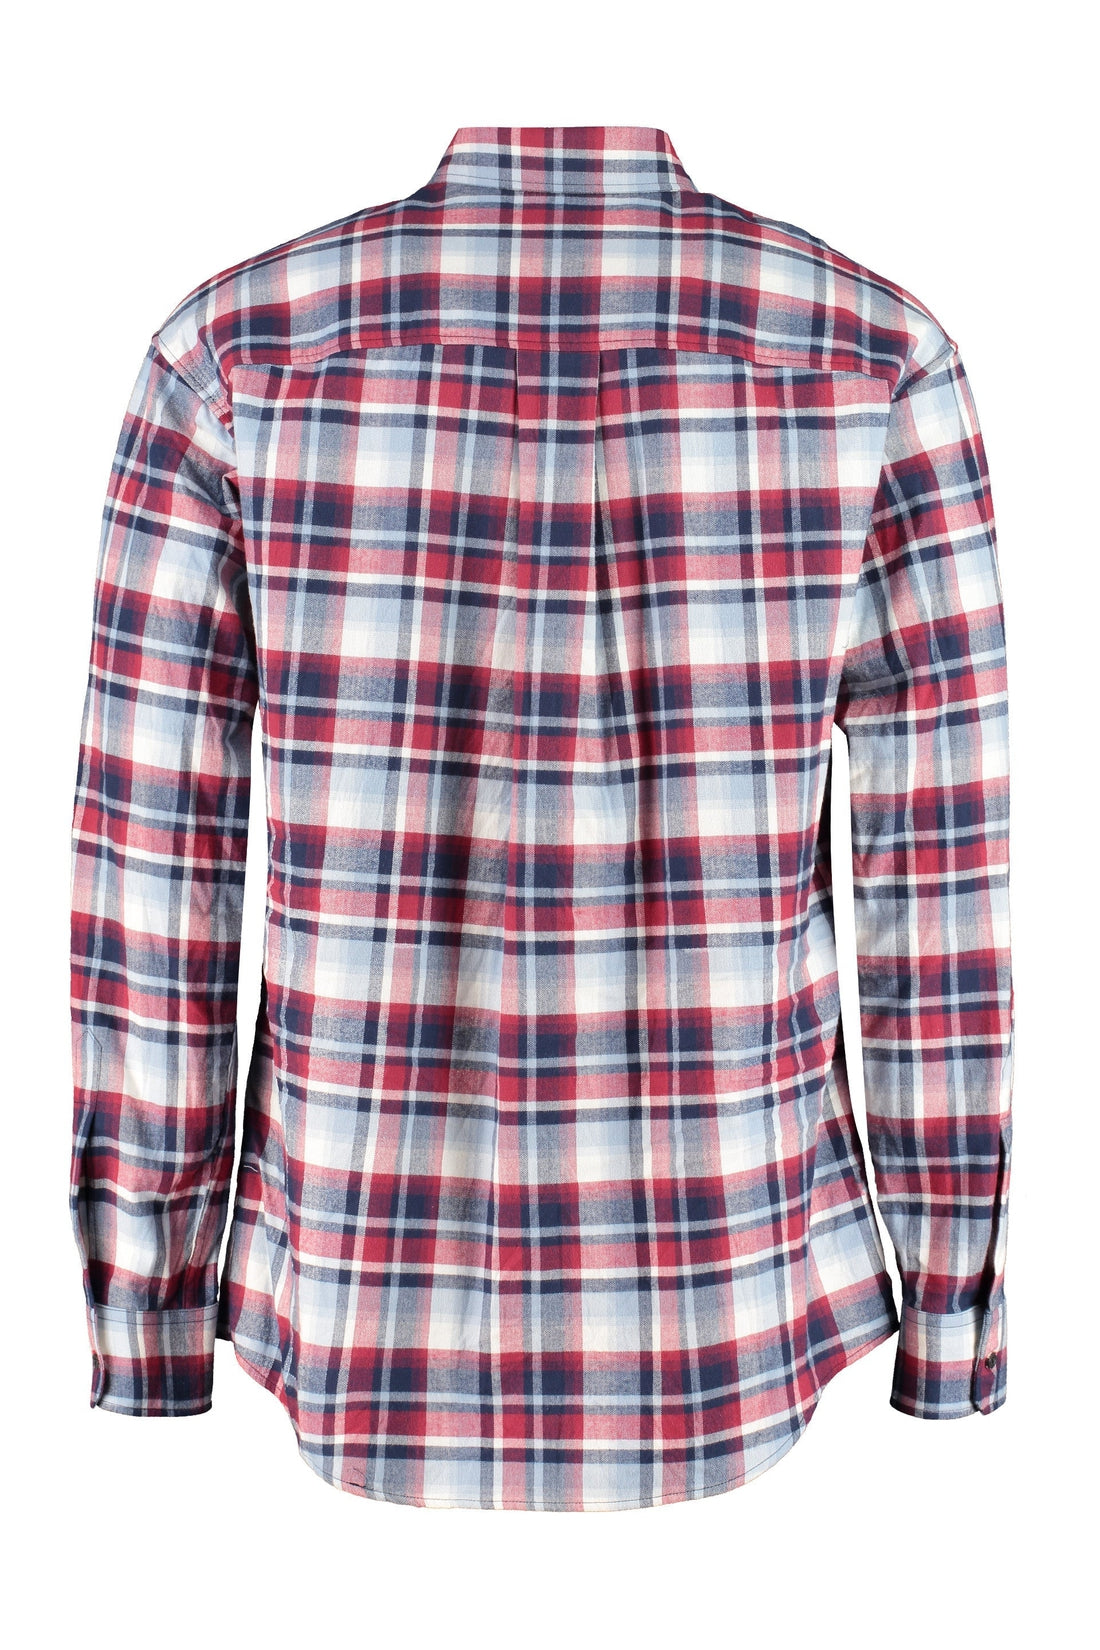 Dsquared2-OUTLET-SALE-Front buttons cotton shirt-ARCHIVIST